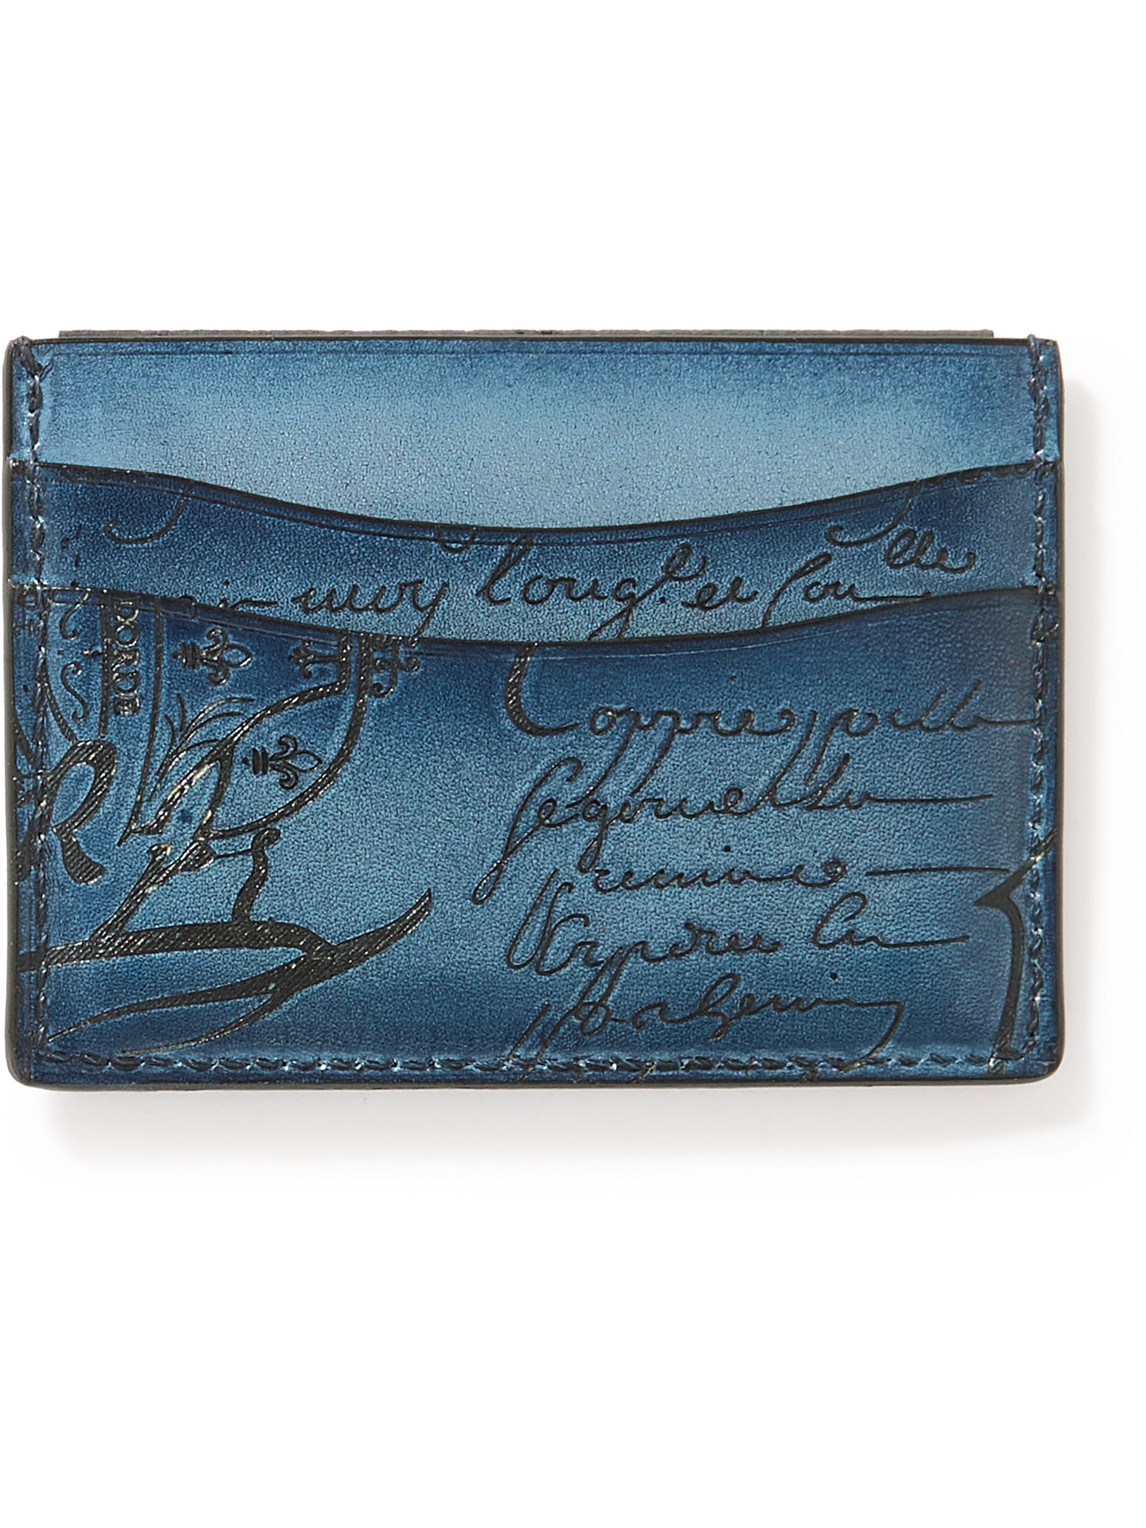 Berluti Bambou Neo Scritto Venezia Leather Cardholder In Blue